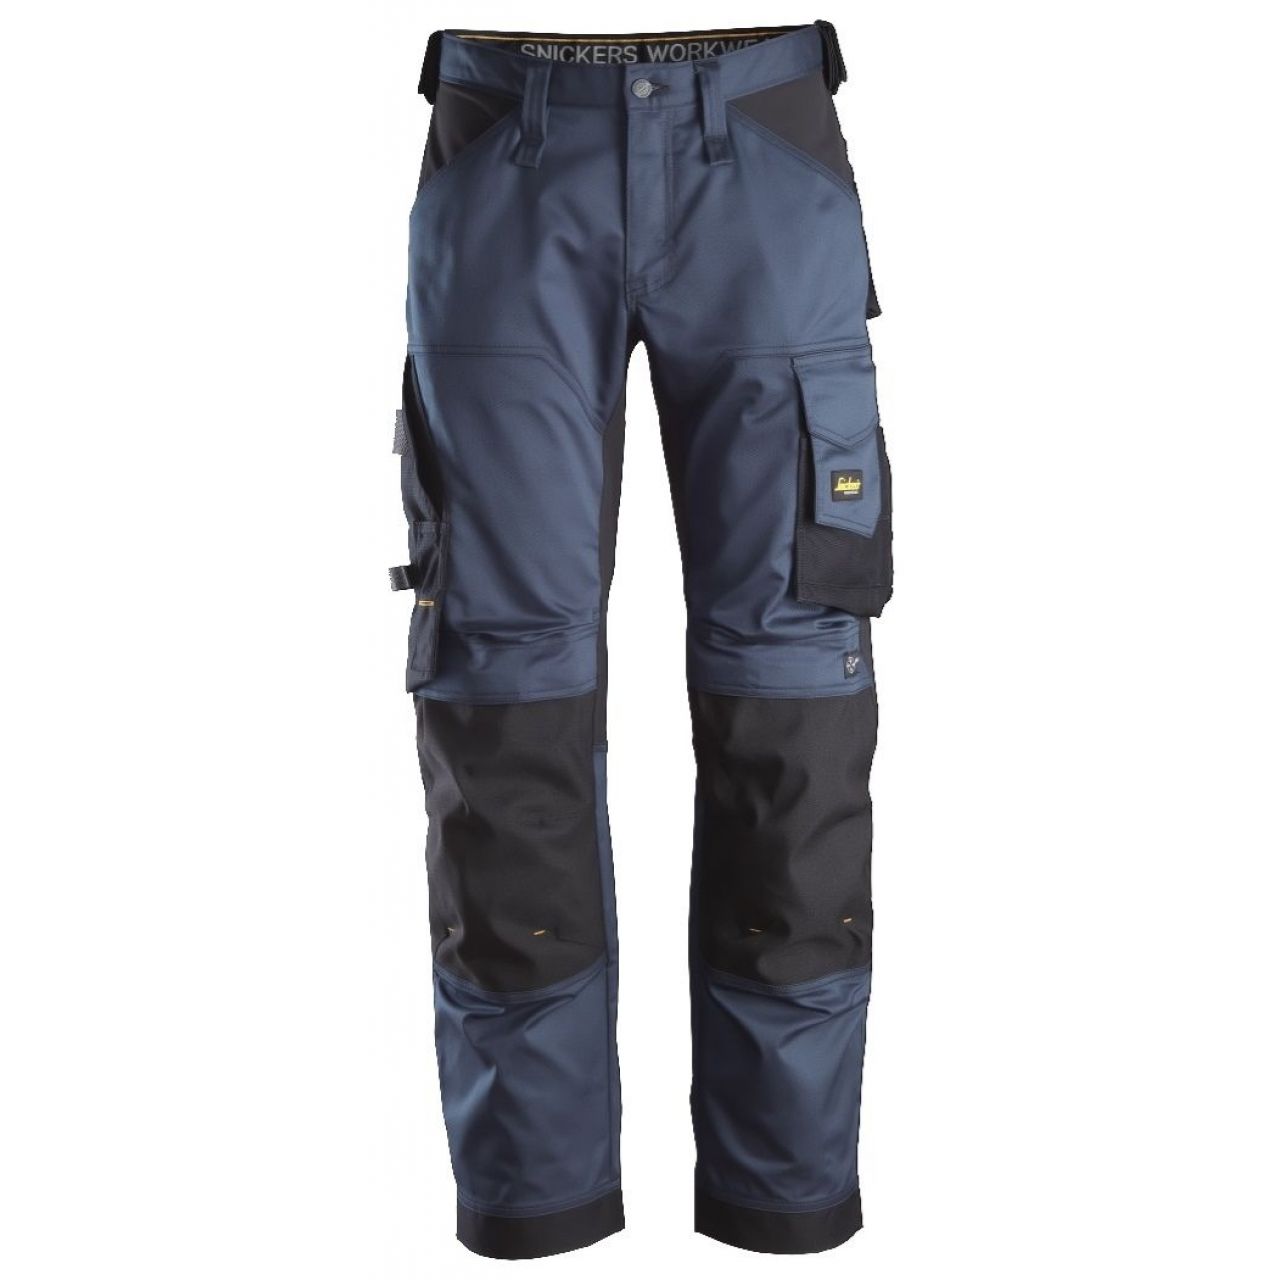 Pantalon elastico ajuste holgado AllroundWork azul marino-negro talla 048